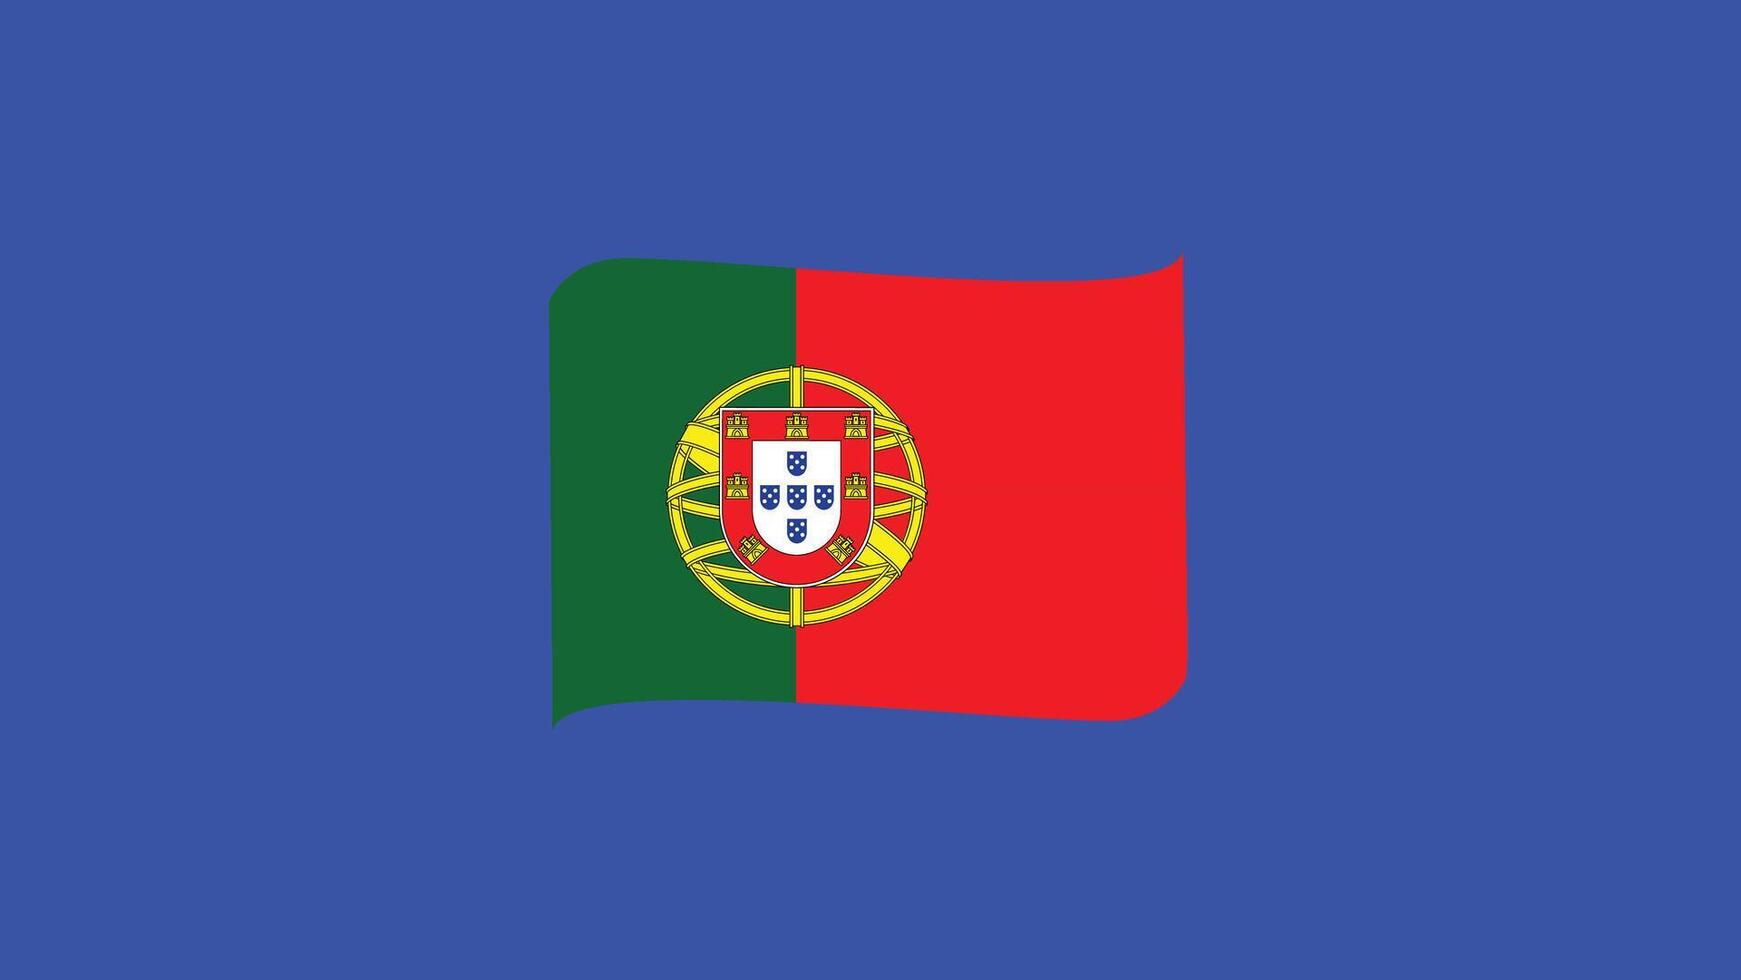 le Portugal drapeau ruban européen nations 2024 équipes des pays européen Allemagne Football symbole logo conception illustration vecteur